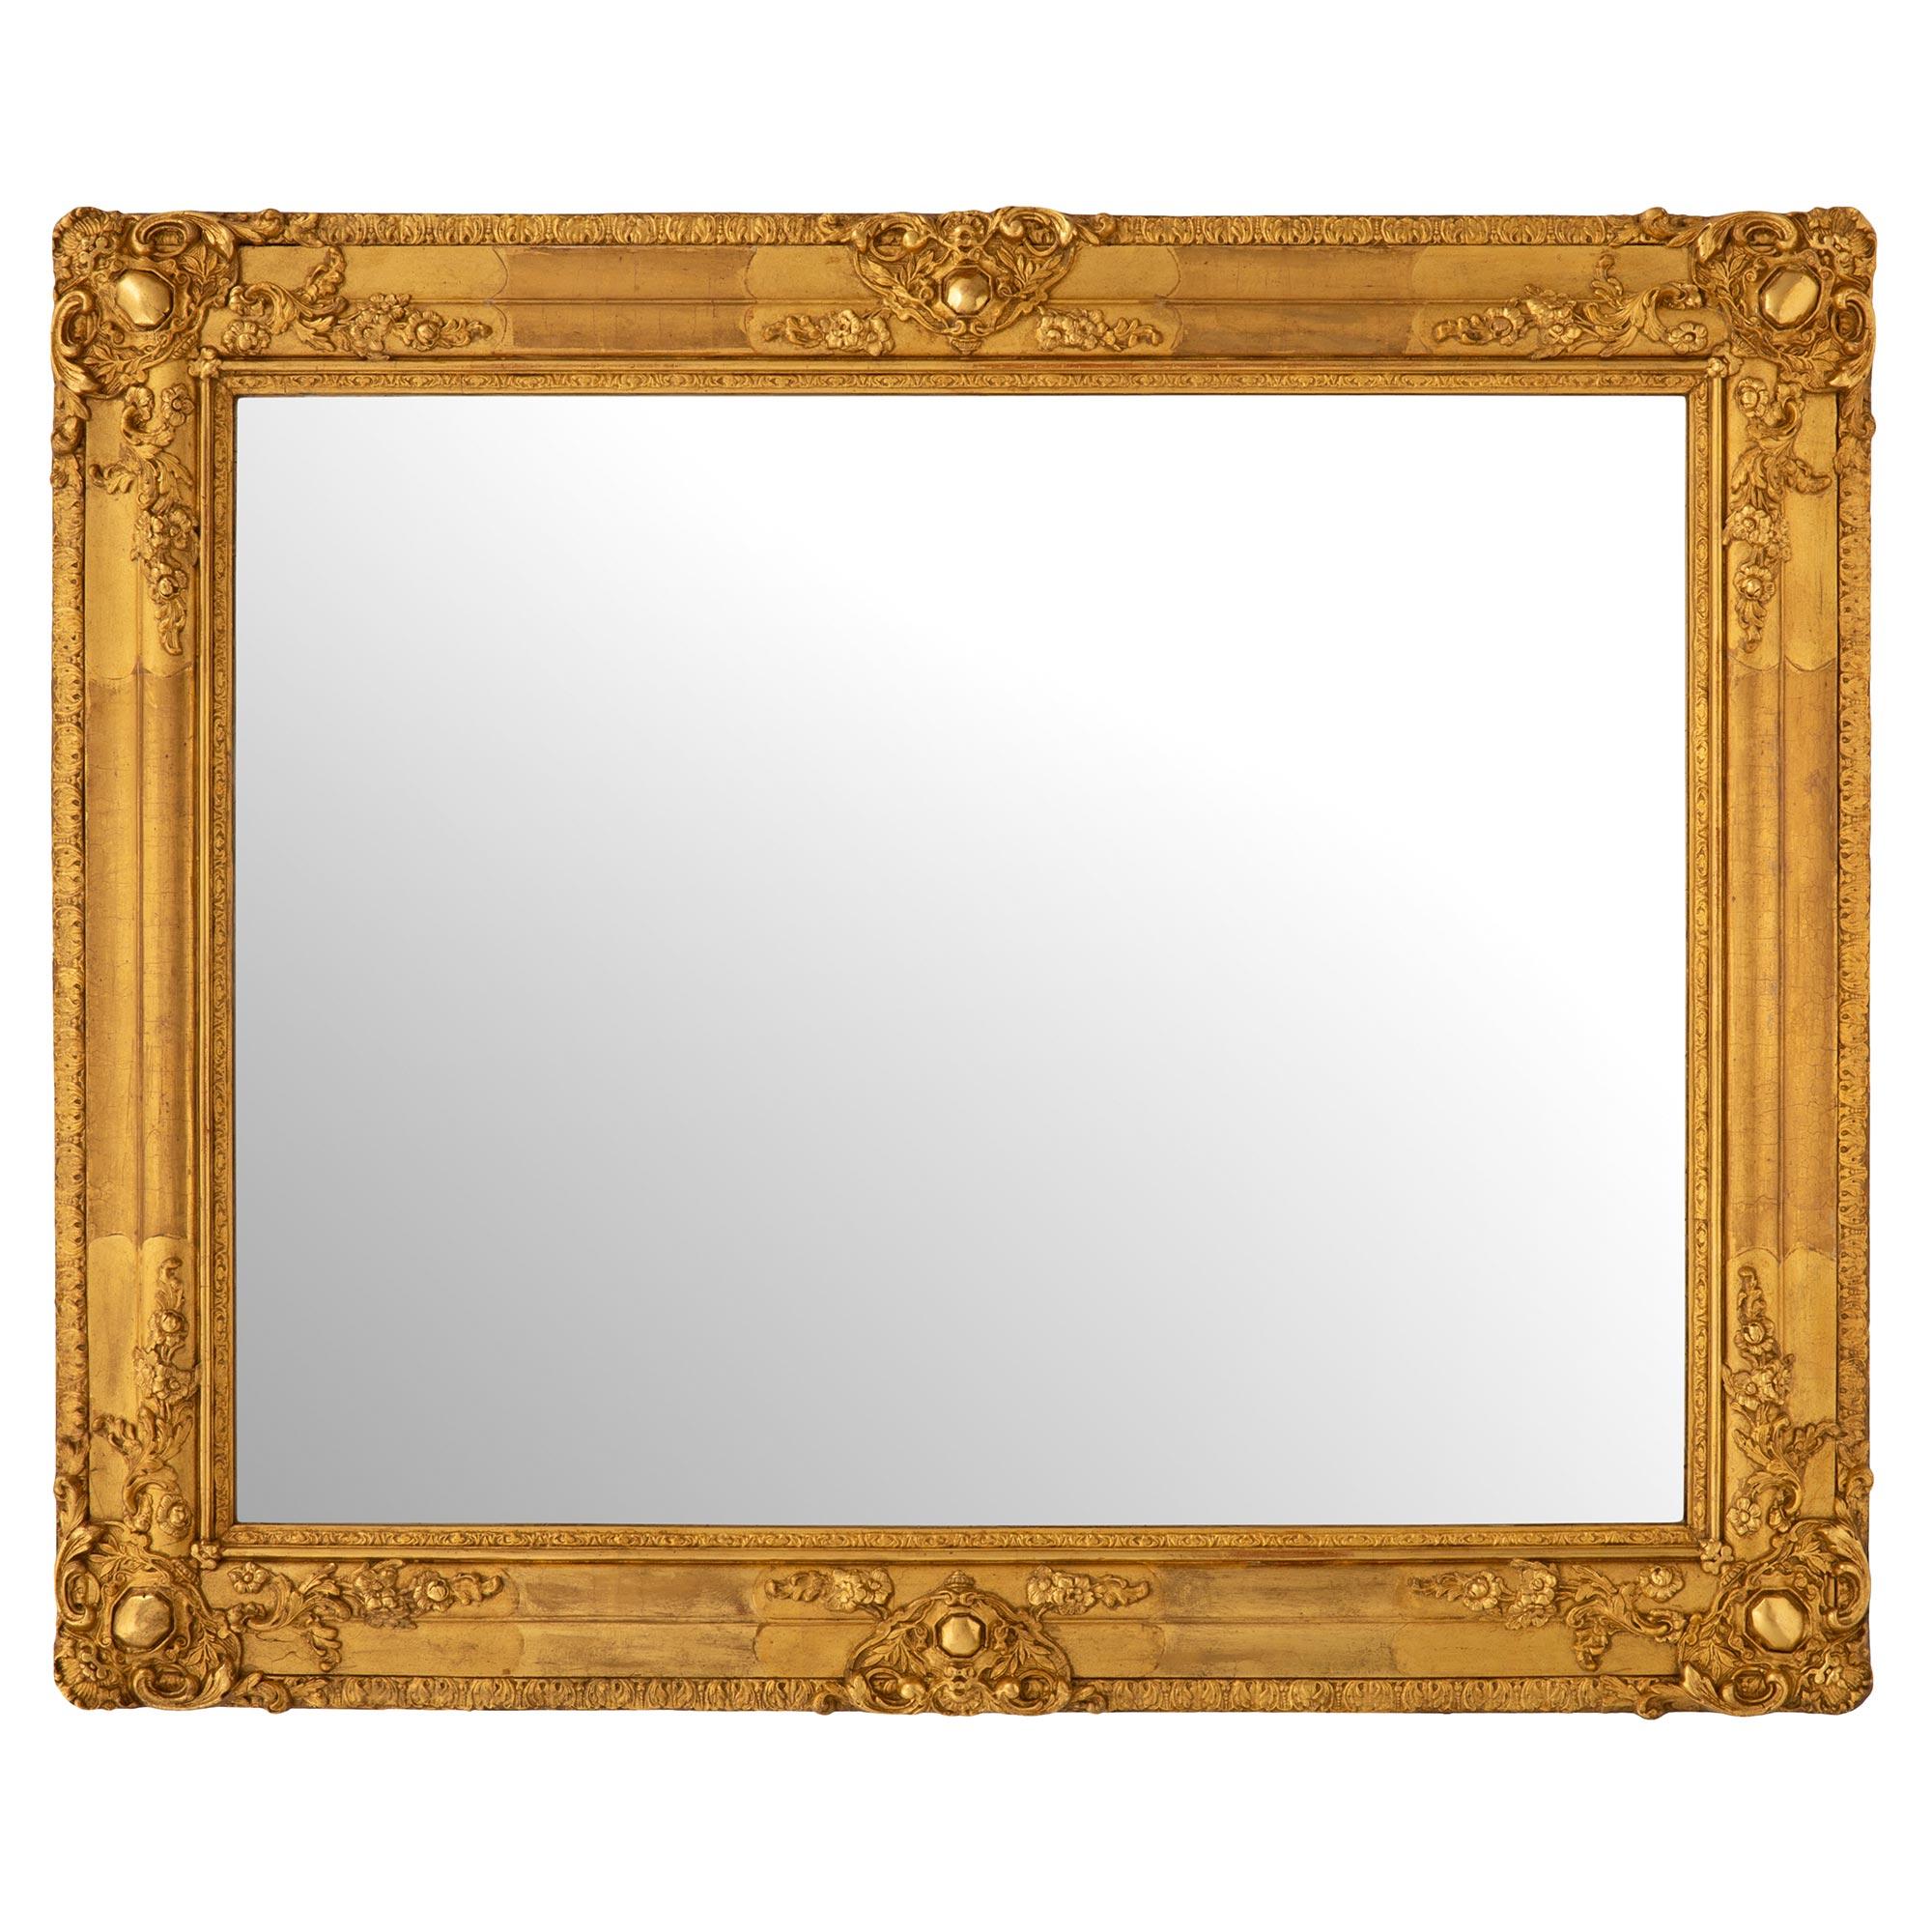 Paire de miroirs en bois doré de style Louis XVI du XIXe siècle. Chaque miroir conserve sa plaque d'origine encadrée d'une bordure en bois doré richement sculptée, dans une finition satinée et brunie. Chaque élégant cadre en bois doré présente une